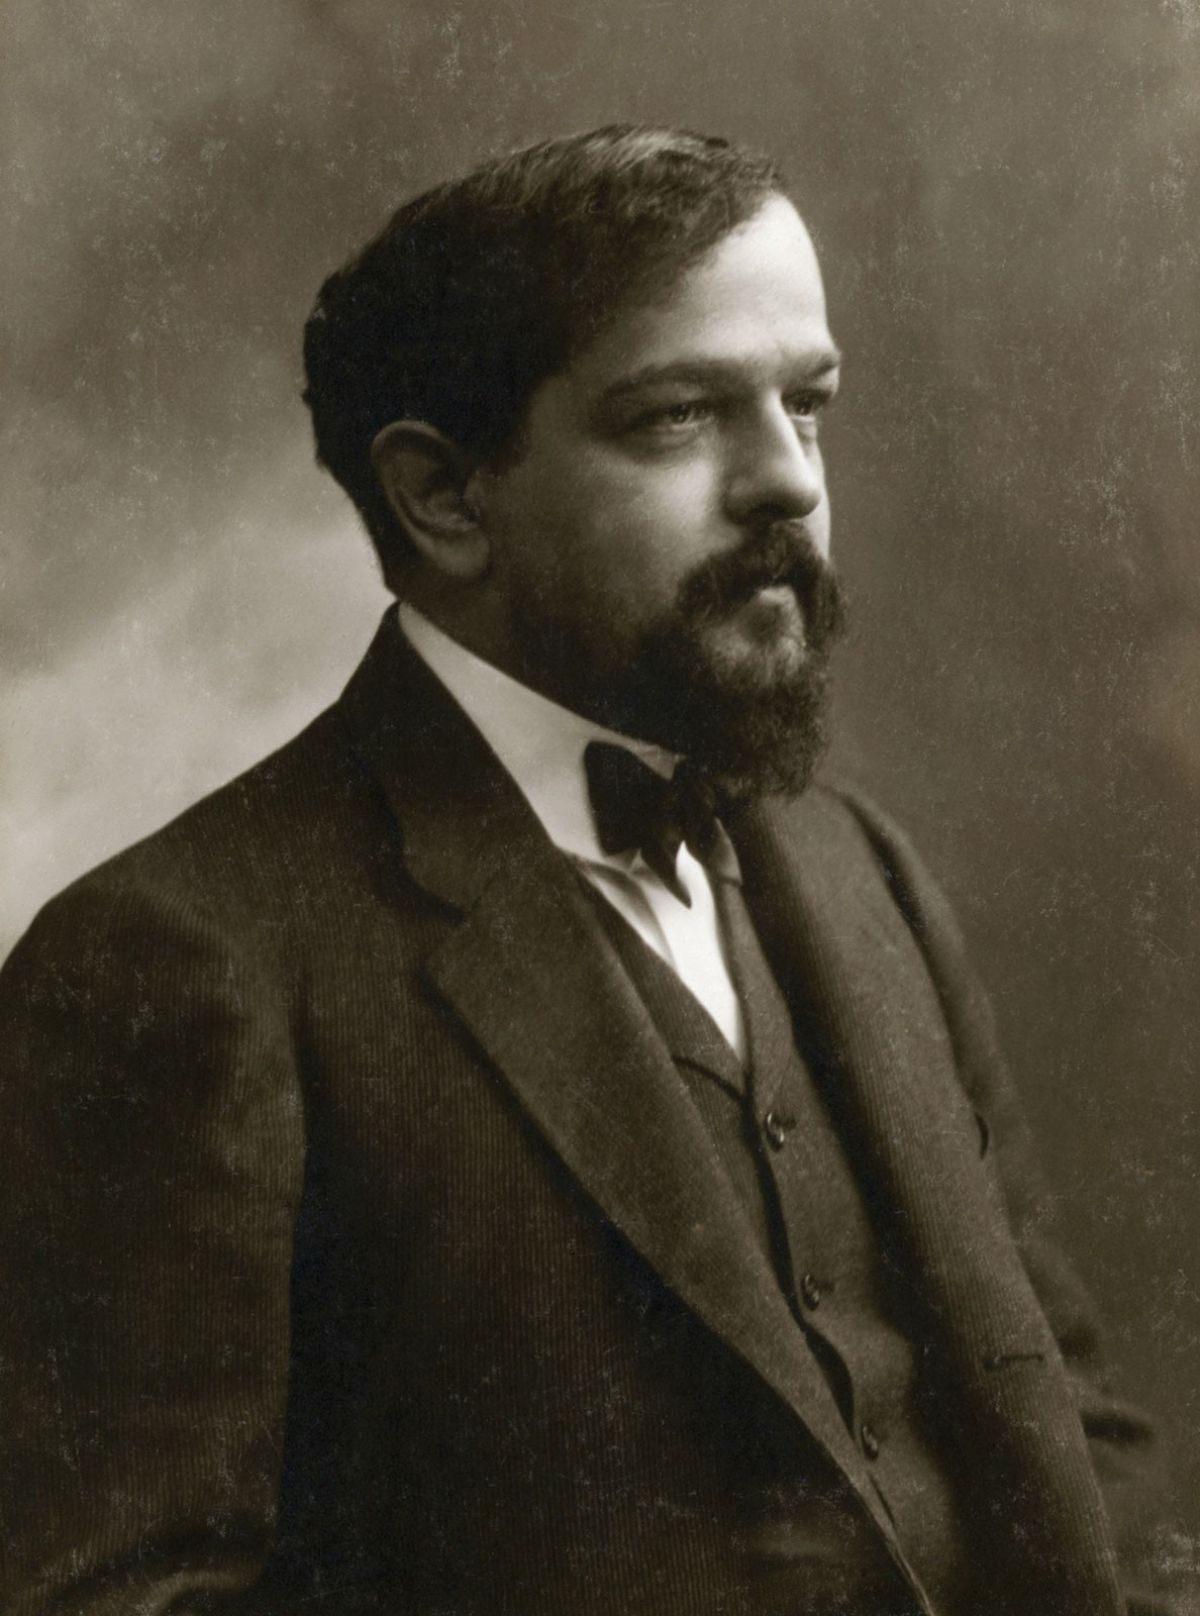 Claude_Debussy_ca_1908,_foto_av_Félix_Nadar.jpg